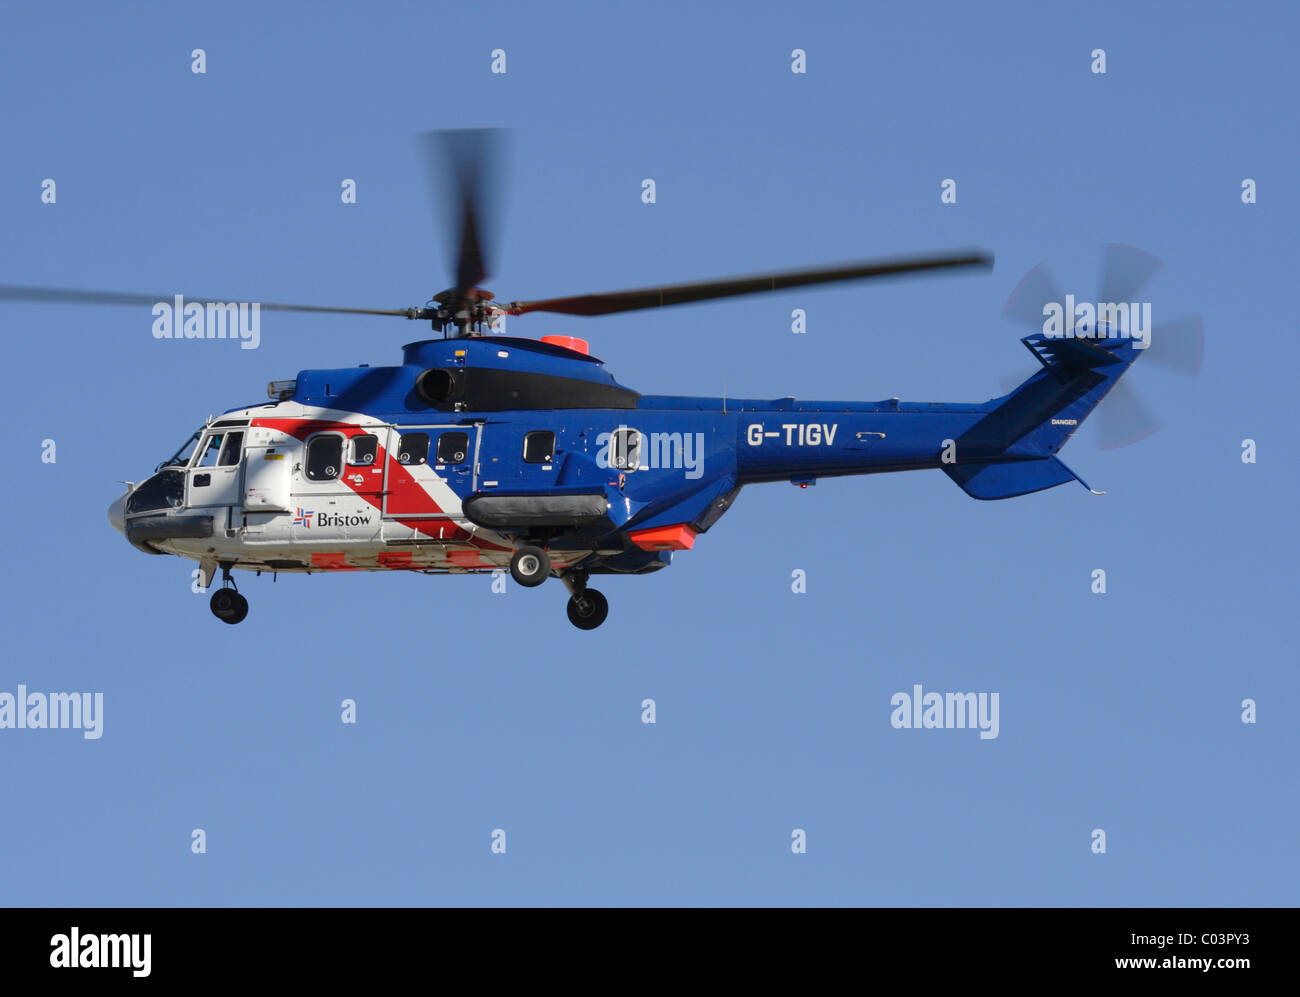 Eurocopter AS332 Super Puma Helikopter von Bristow Hubschrauber betrieben  Stockfotografie - Alamy